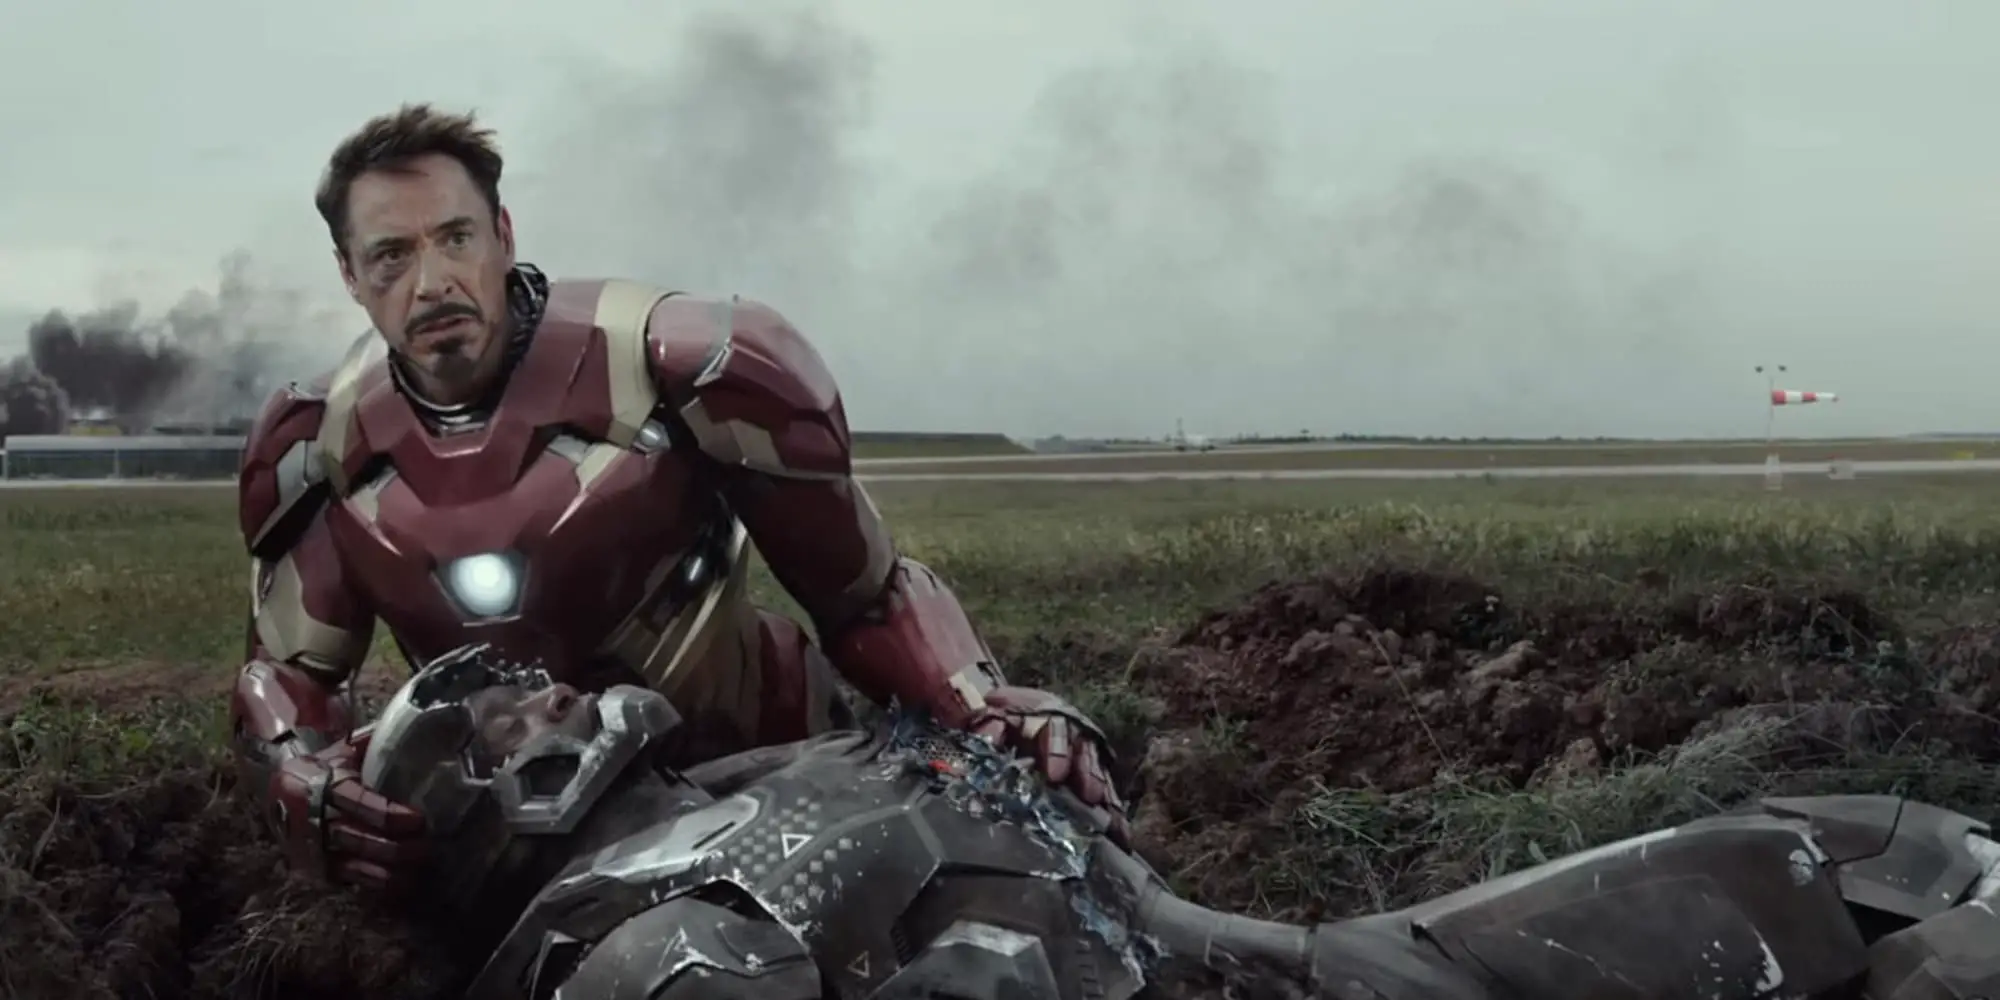 War Machine and Iron Man